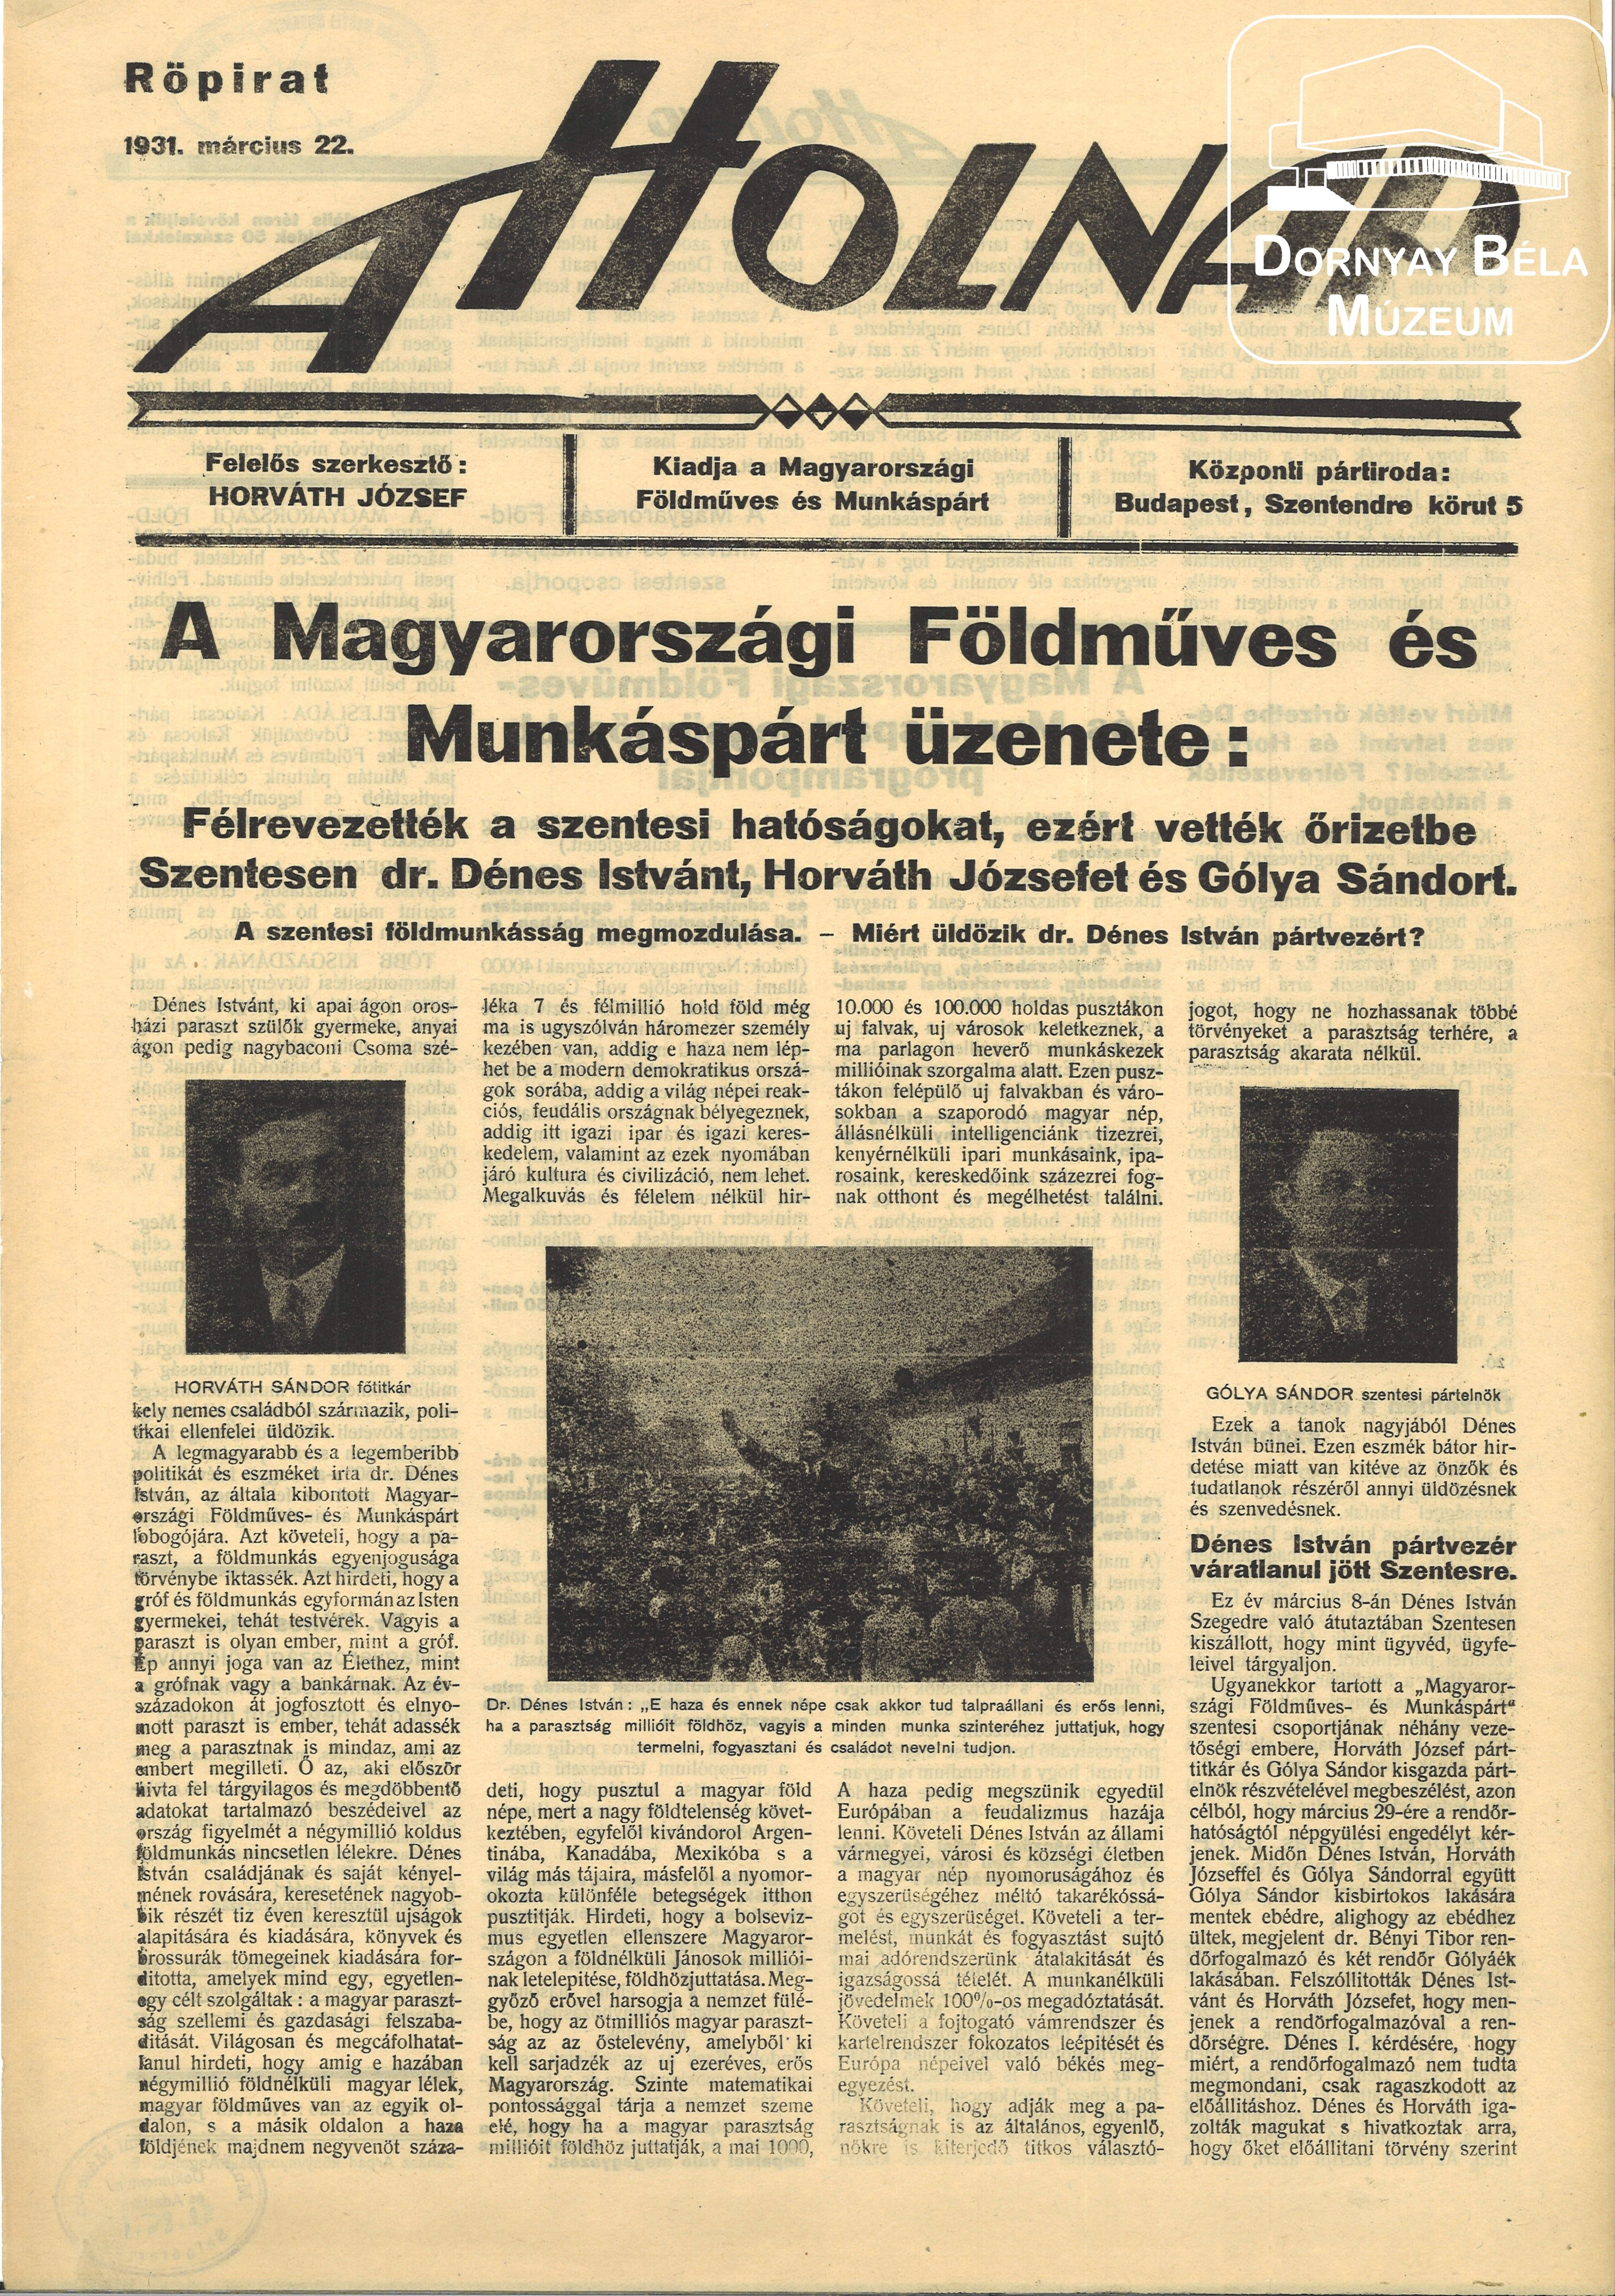 A Holnap. A Magyarországi Földműves és Munkáspárt röpirata. (Dornyay Béla Múzeum, Salgótarján CC BY-NC-SA)